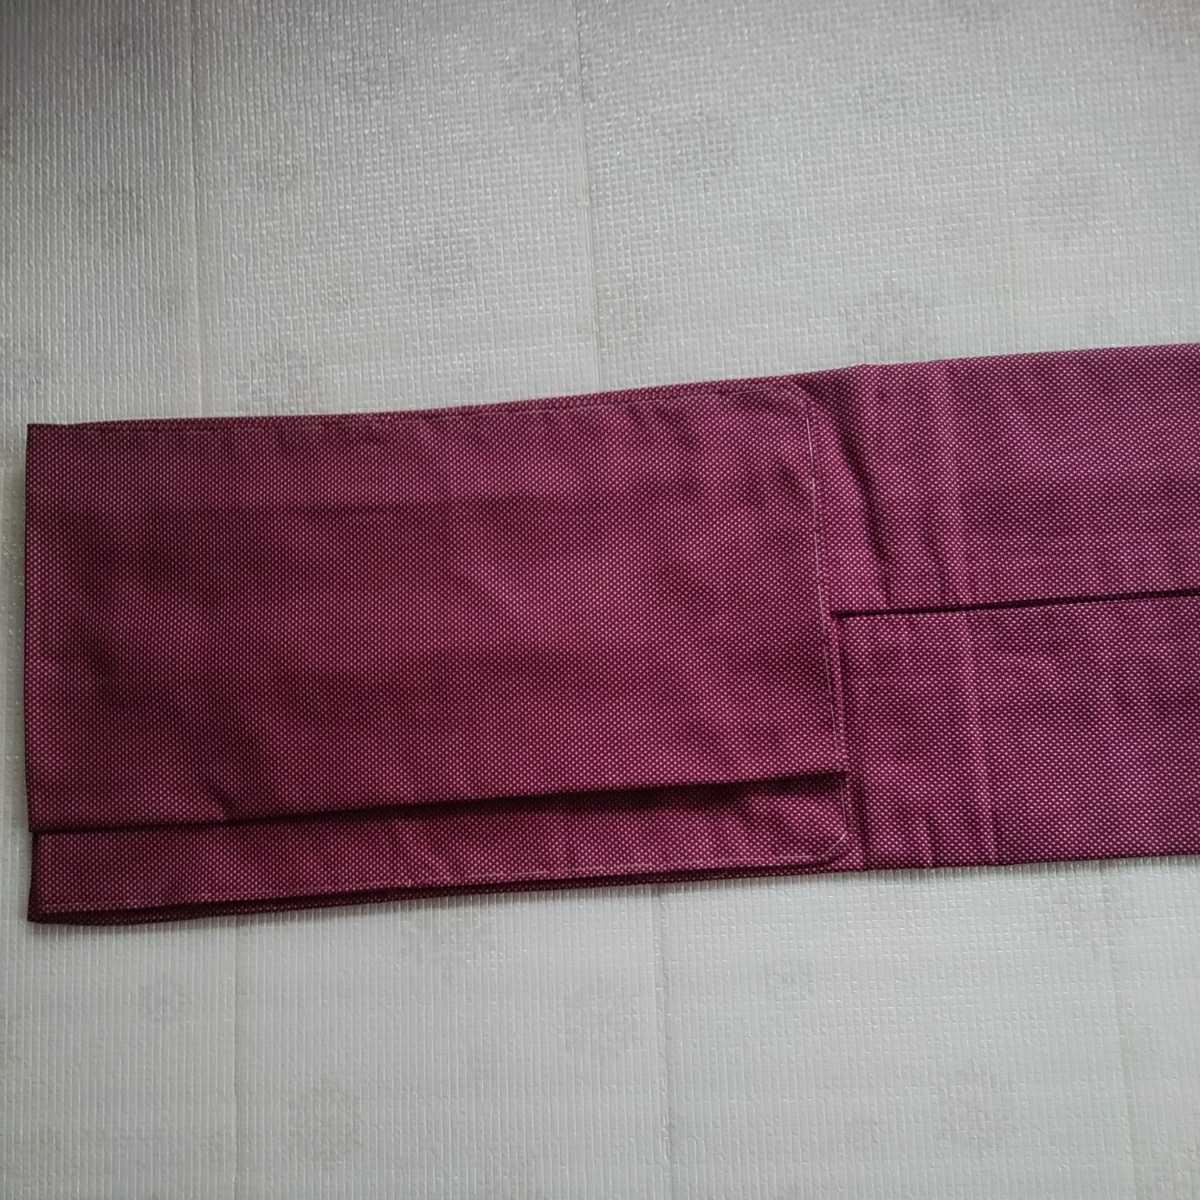 道中着 正絹 裄68センチ リメイク作品 赤紫色